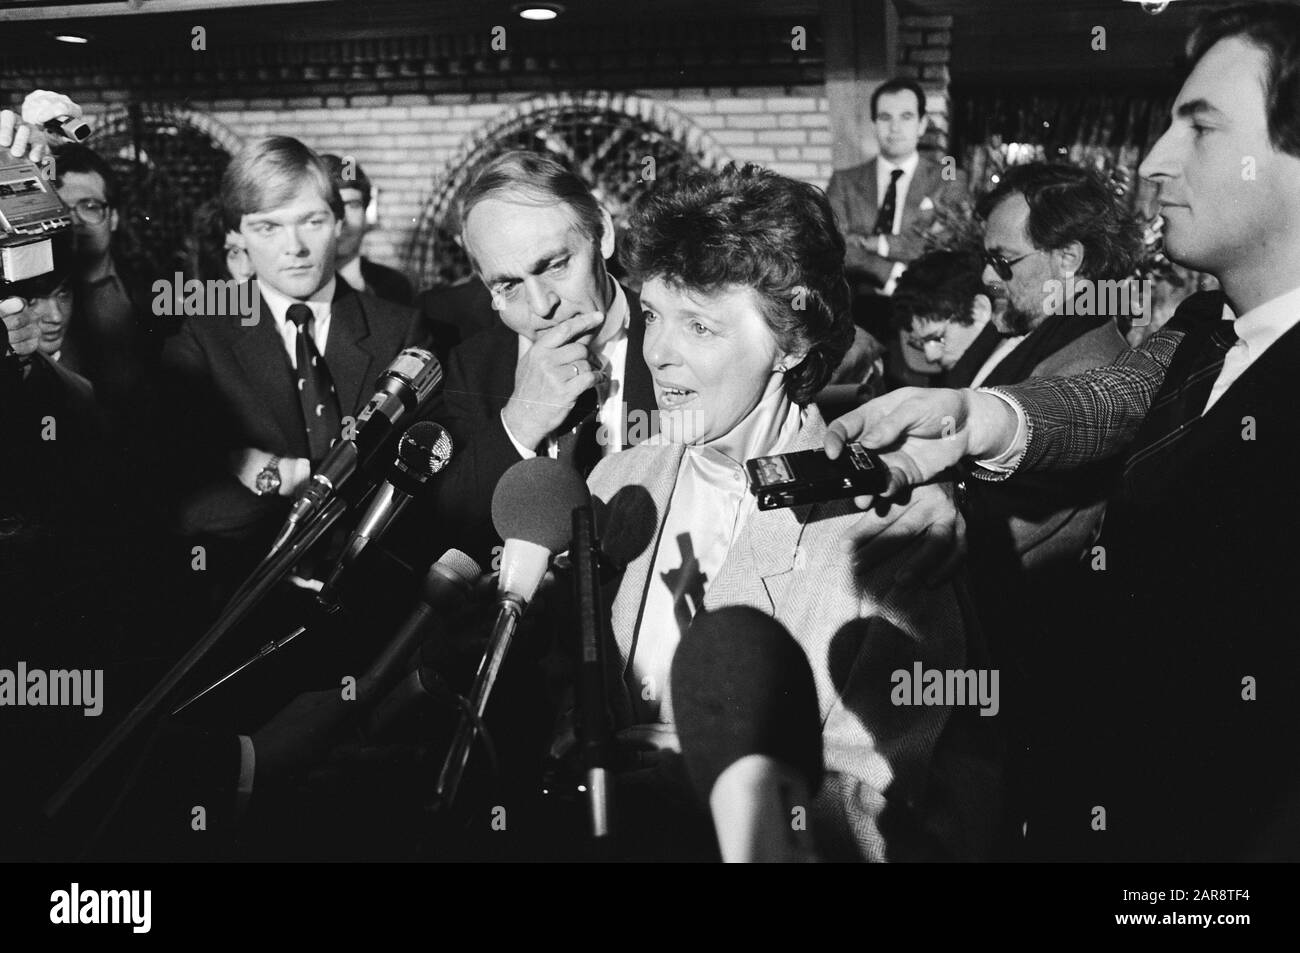 Frau Van der Valk nach ihrer Freilassung Während ihrer Presseerklärung am 18. Dezember 1982 in Nuland zurückentführt Ort: Noord-brabant, Nuland Schlüsselwörter: Entführungen, Pressekonferenzen Personenname: Valk, Gerrit van der, Valk, Toos van der Stockfoto